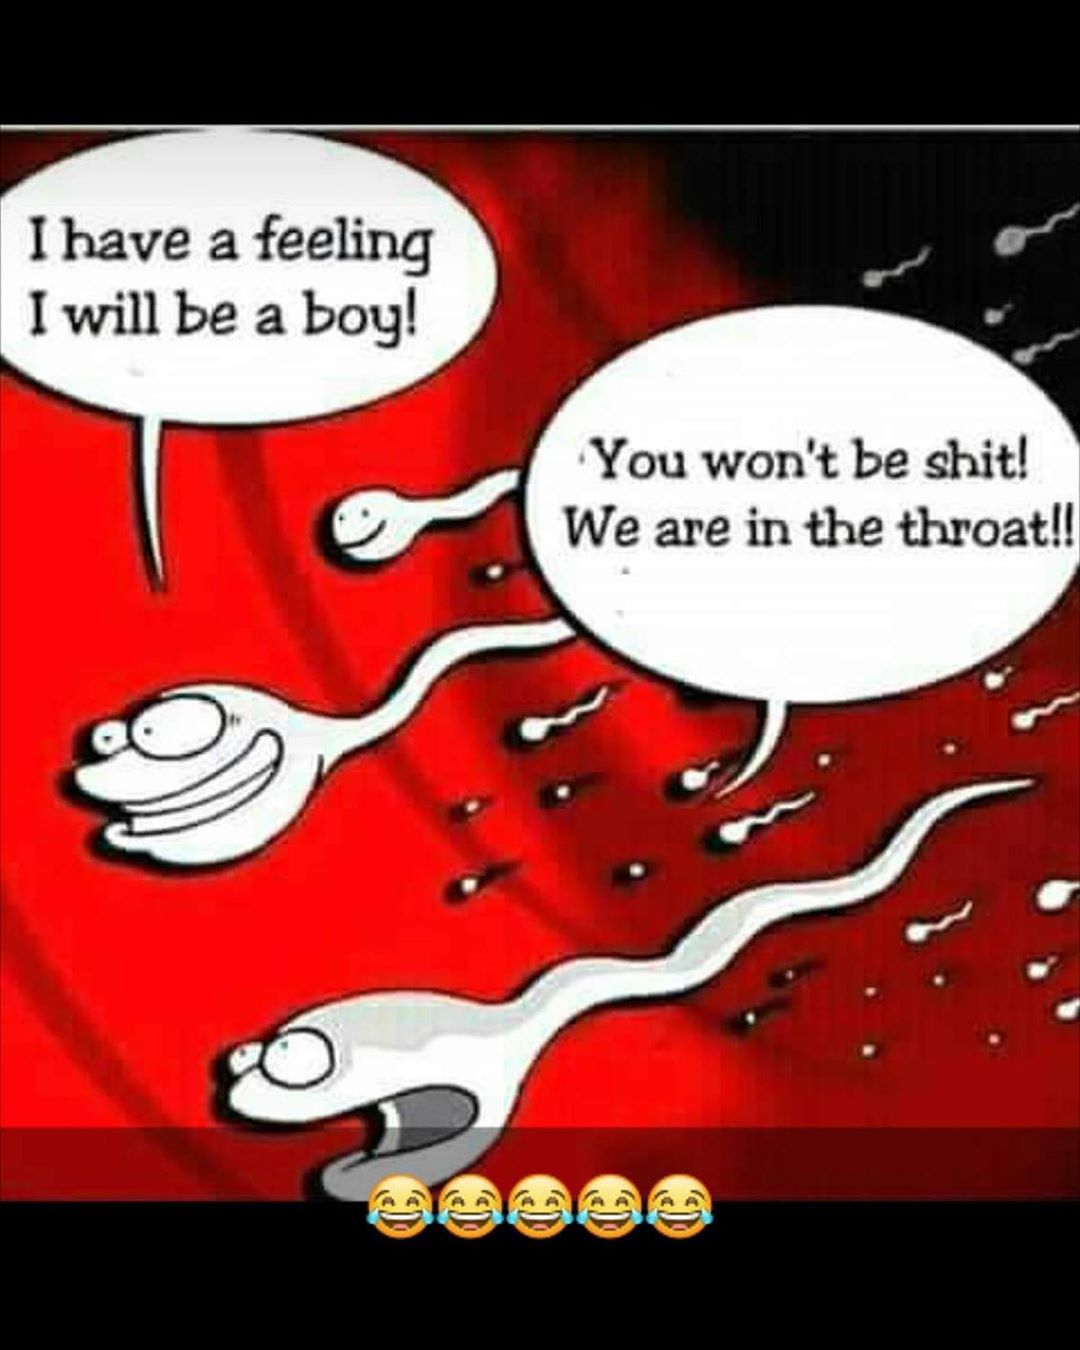 sperm i have a feeling i will - I have a feeling I will be a boy! You won't be shit! We are in the throat!! Umano